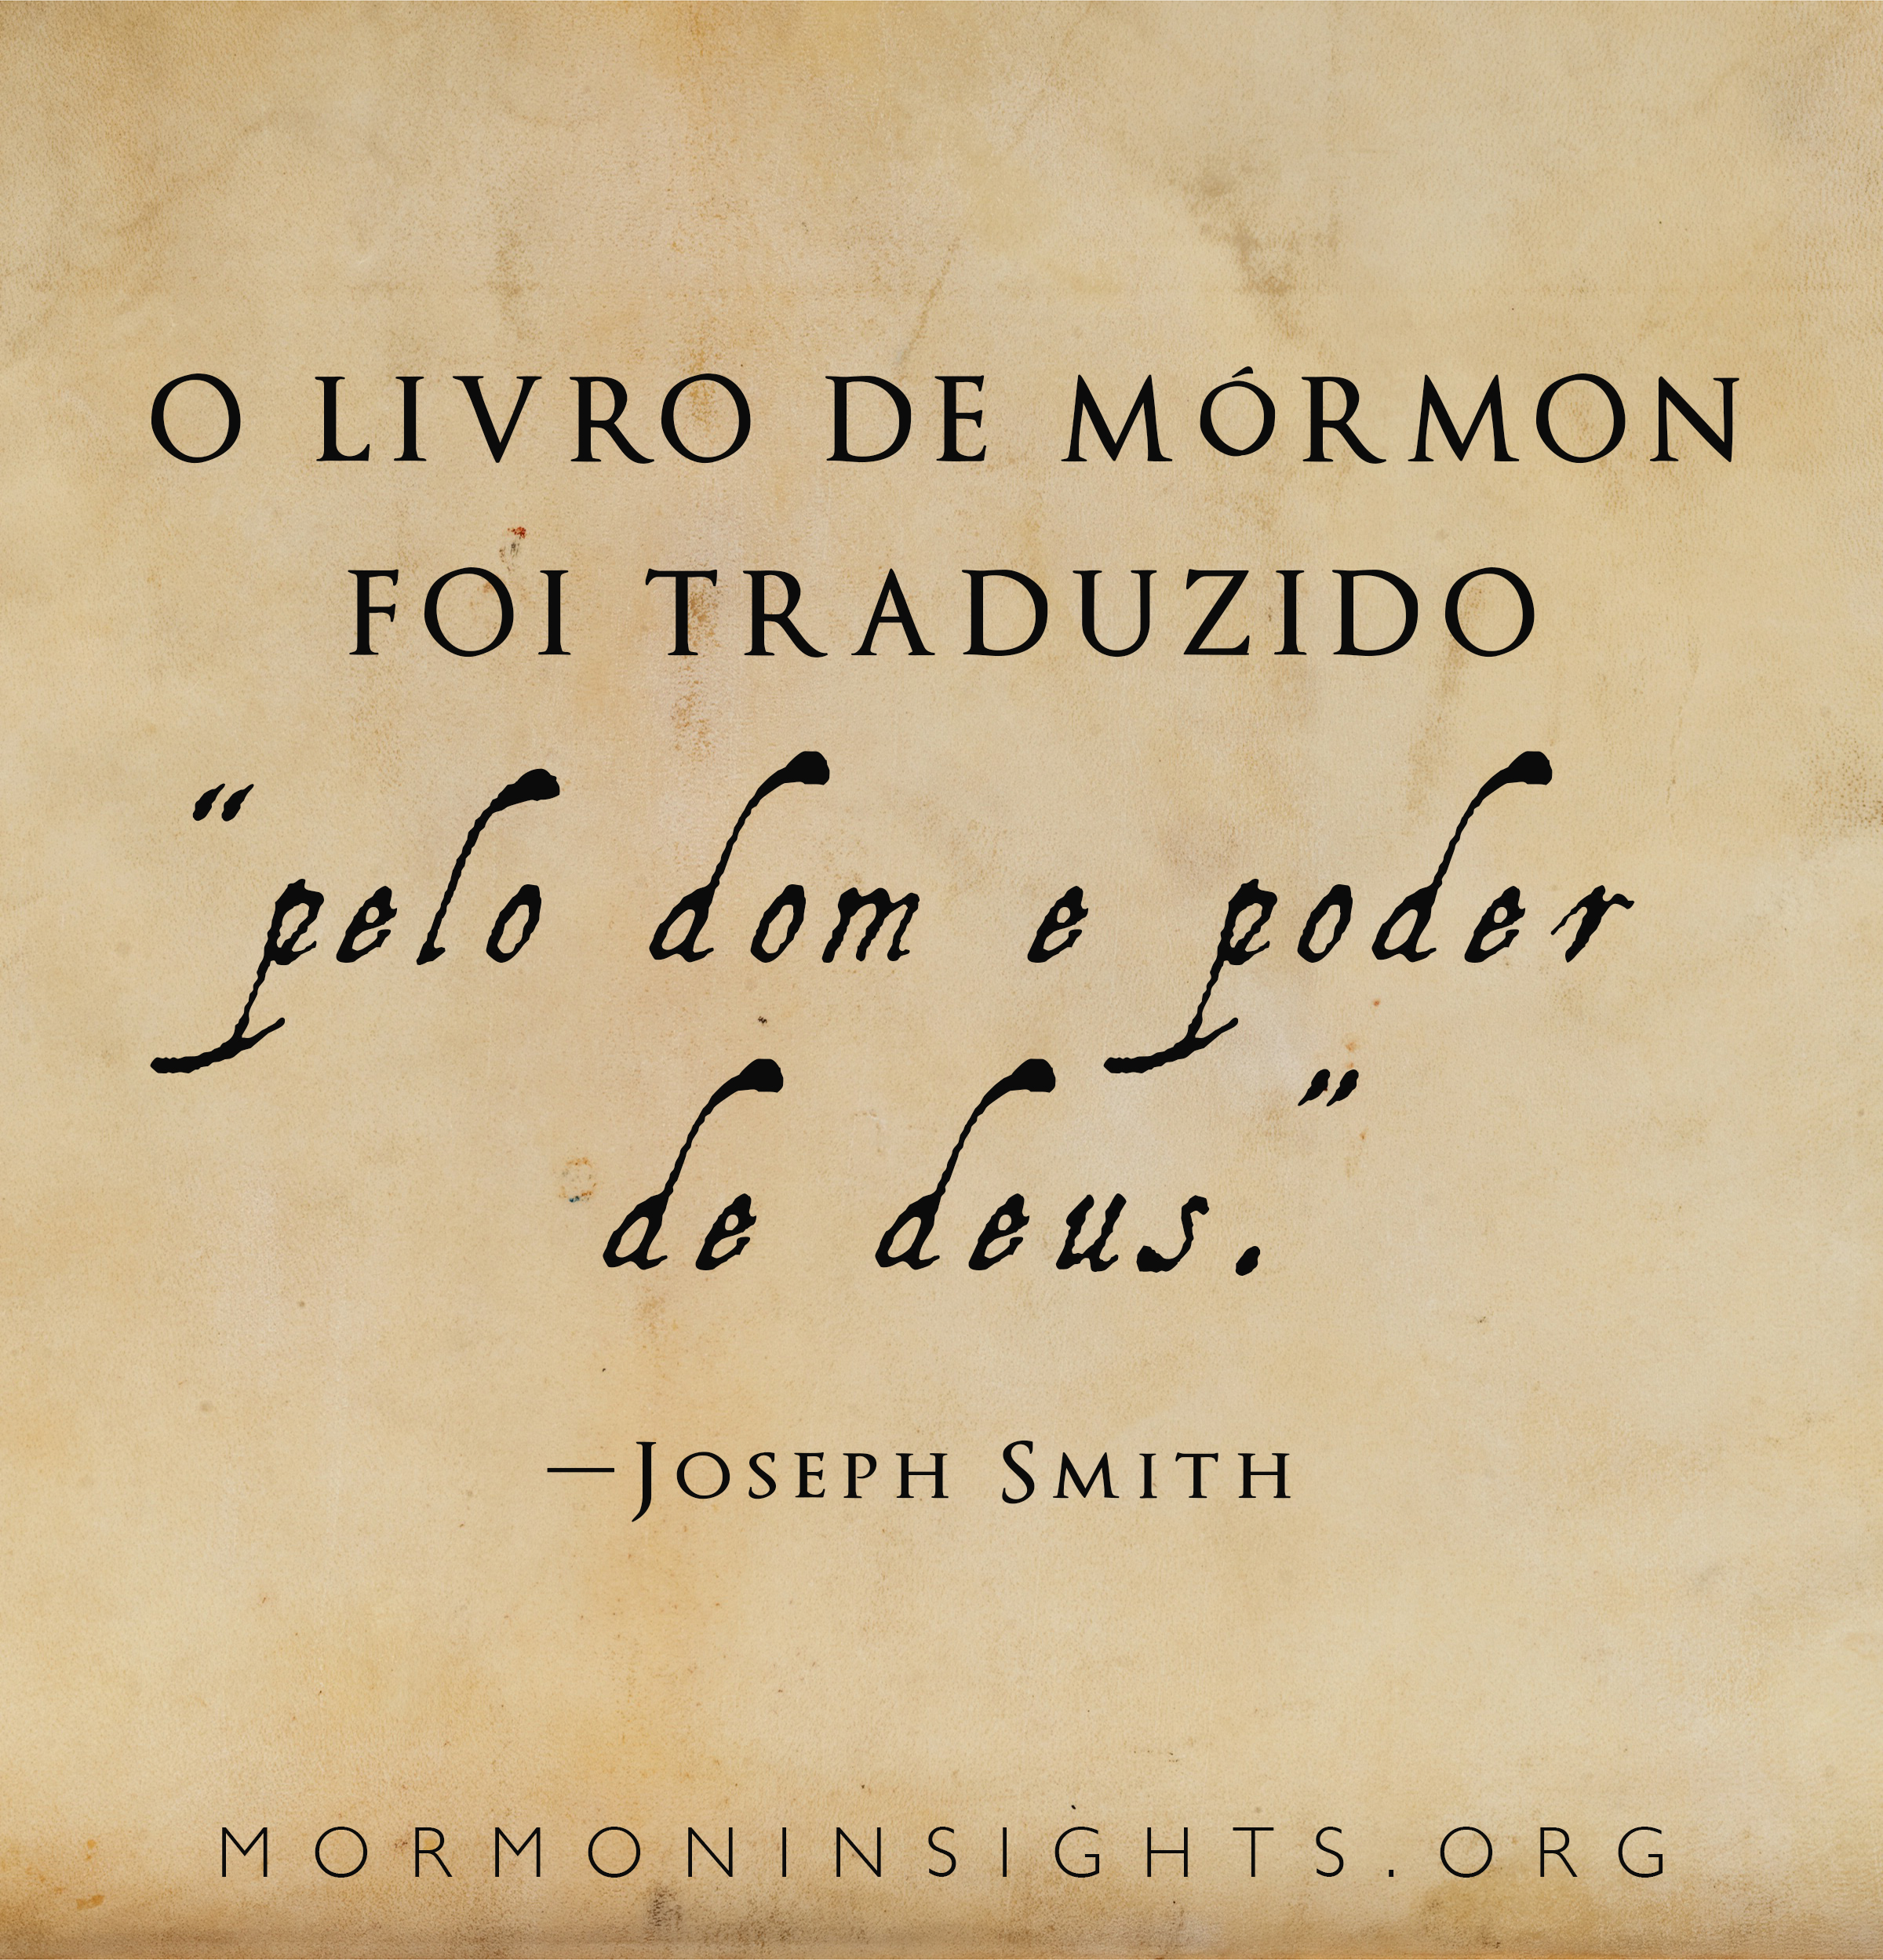 "O LIVRO DE MÓRMON foi traduzido "'PELO DOM E PODER DE DEUS.'" — Joseph Smith